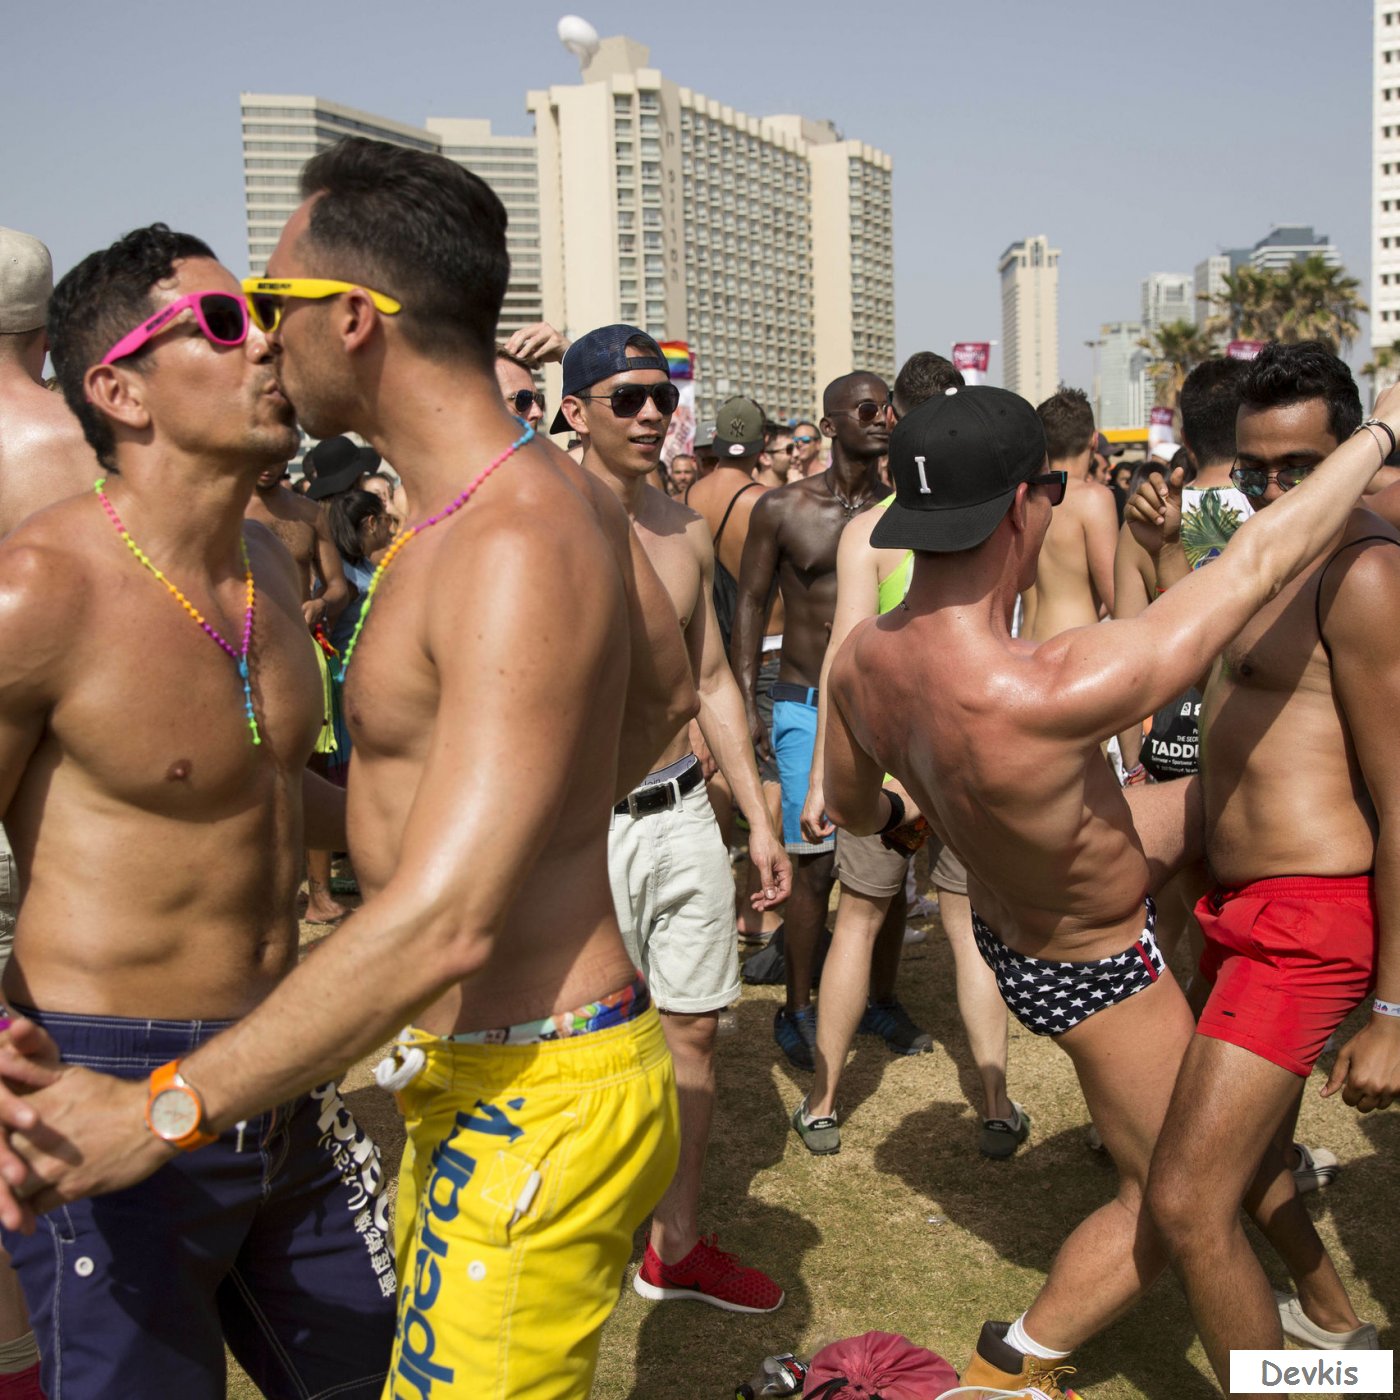 вечеринка геев смотреть онлайн фото 53